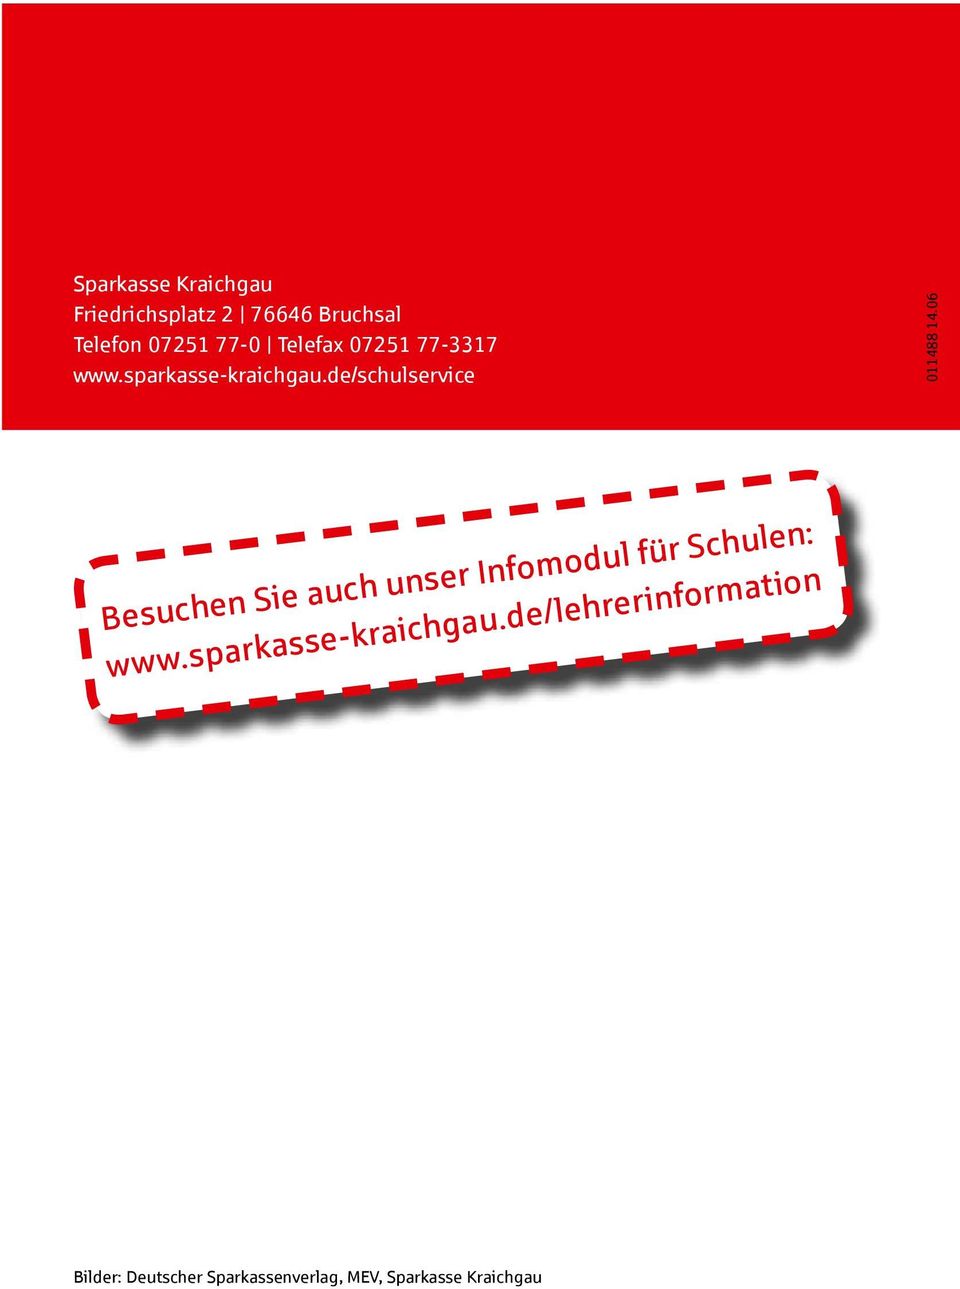 06 Besuchen Sie auch unser Infomodul für Schulen: www.sparkasse-kraichgau.